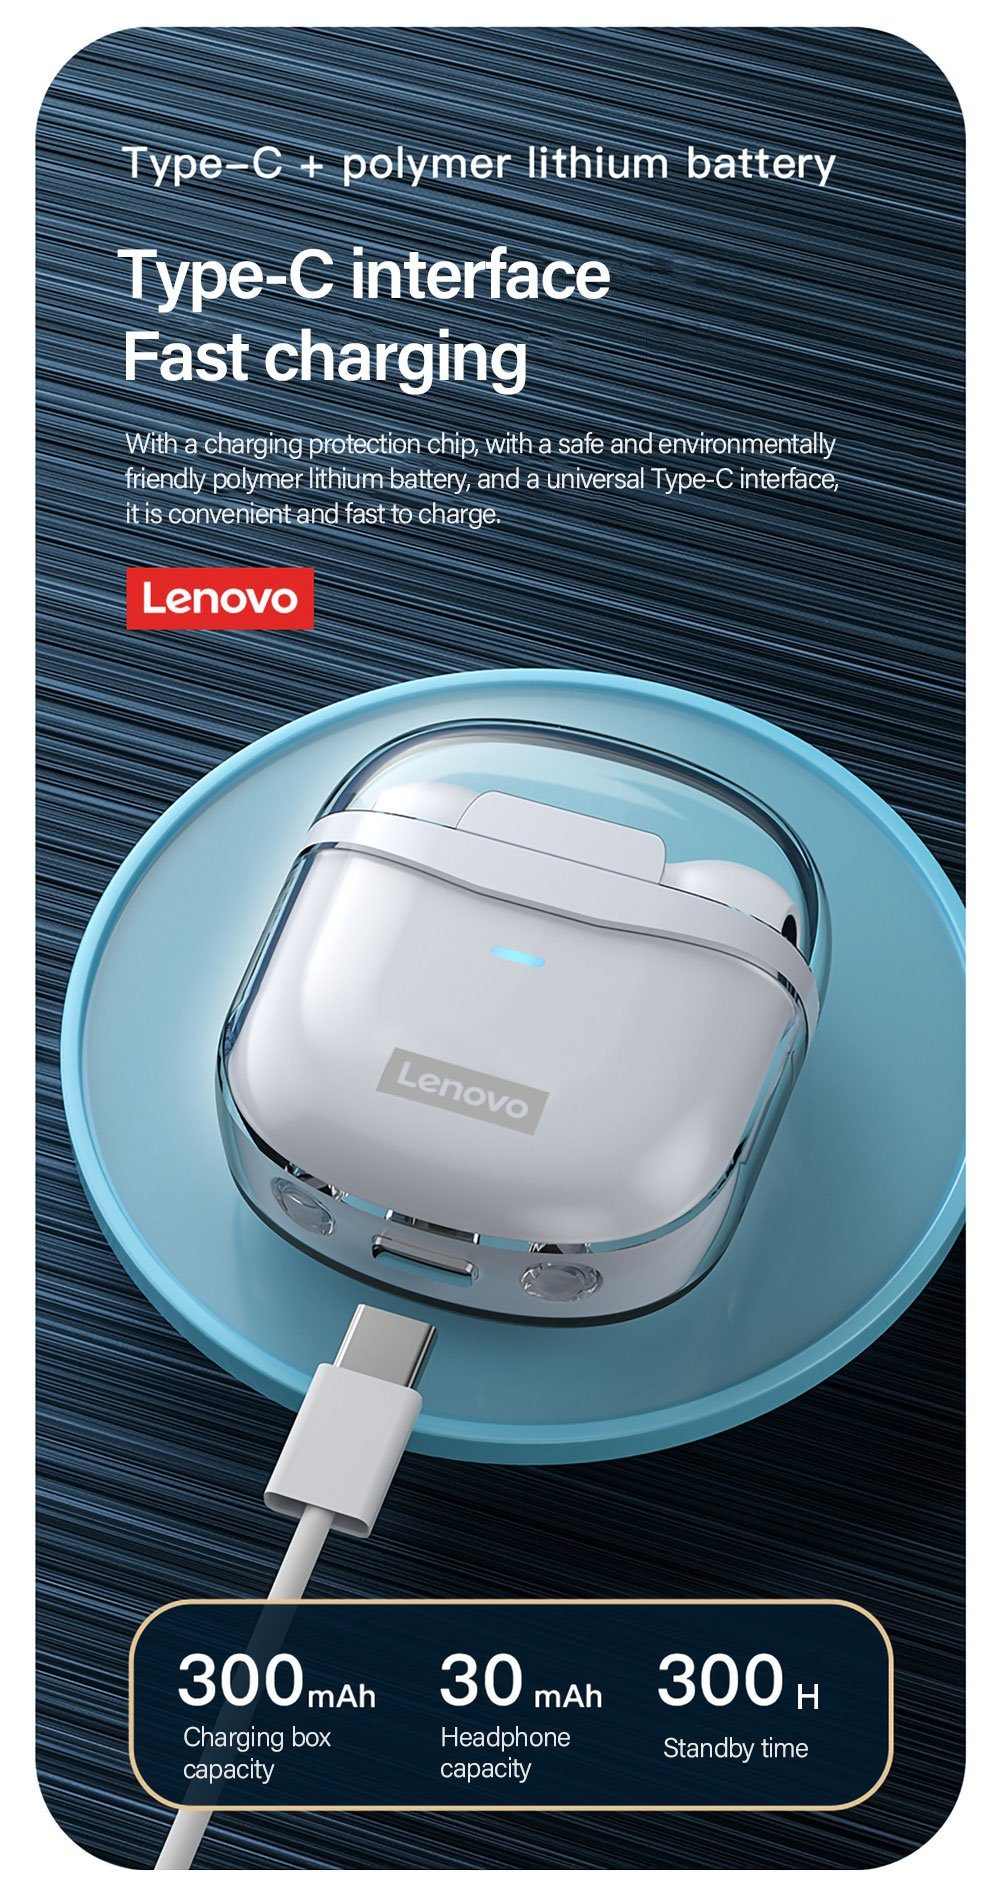 Lenovo XT96 mit Touch-Steuerung kabellos, mit Stereo-Ohrhörer Weiß) mAh Kopfhörer-Ladehülle Bluetooth Wireless, (True - 300 Bluetooth-Kopfhörer Siri, 5.1